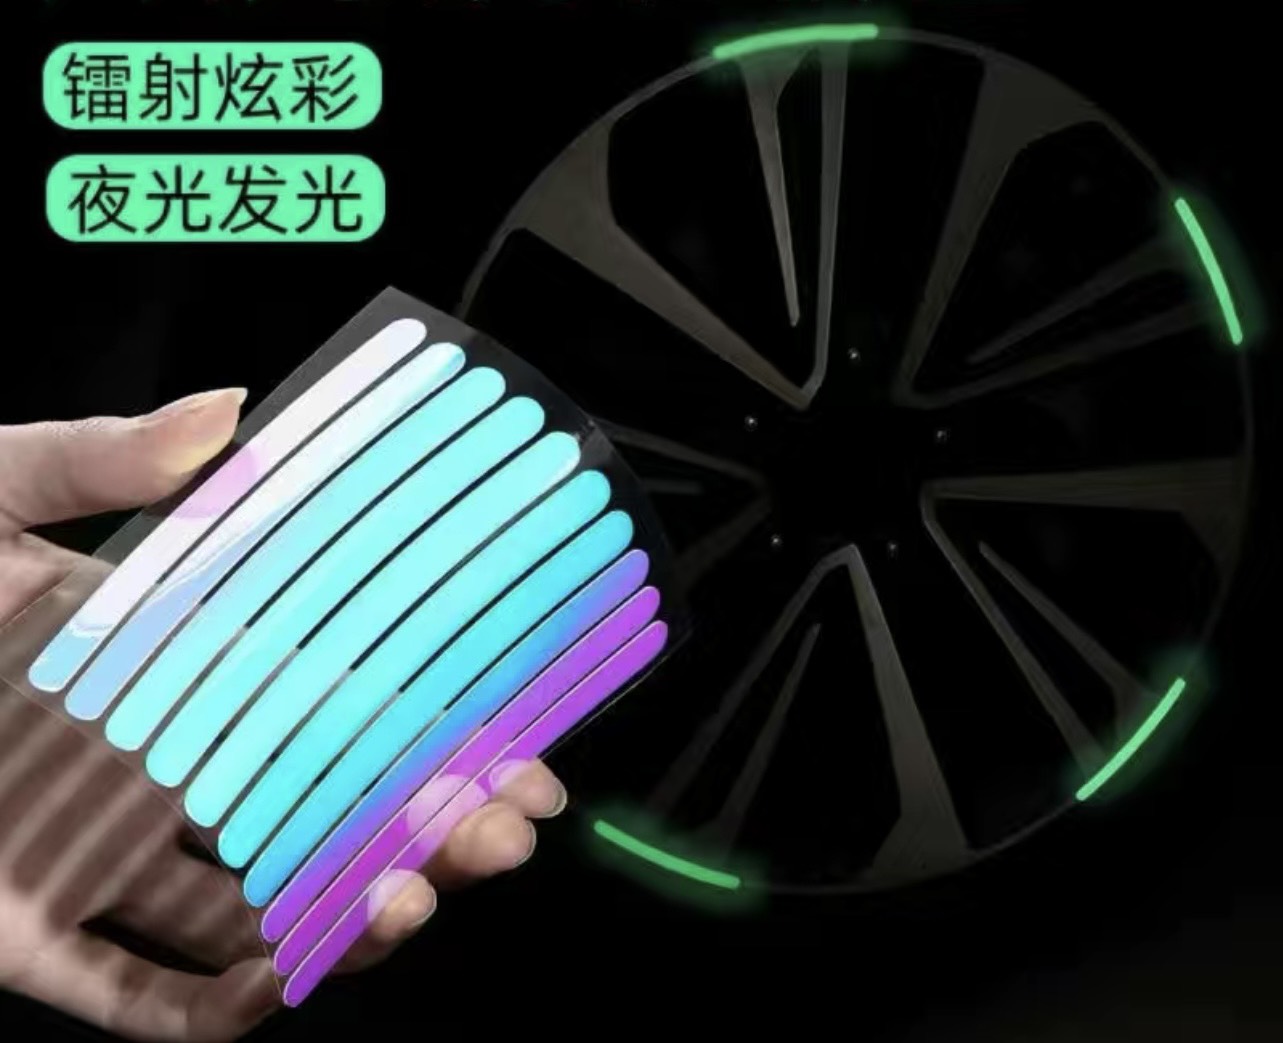 Bộ 10 miếng dán phản quang, phát sáng SPORTS trang trí vành bánh xe màu xanh lá cây cho ô tô, xe máy, xe đạp